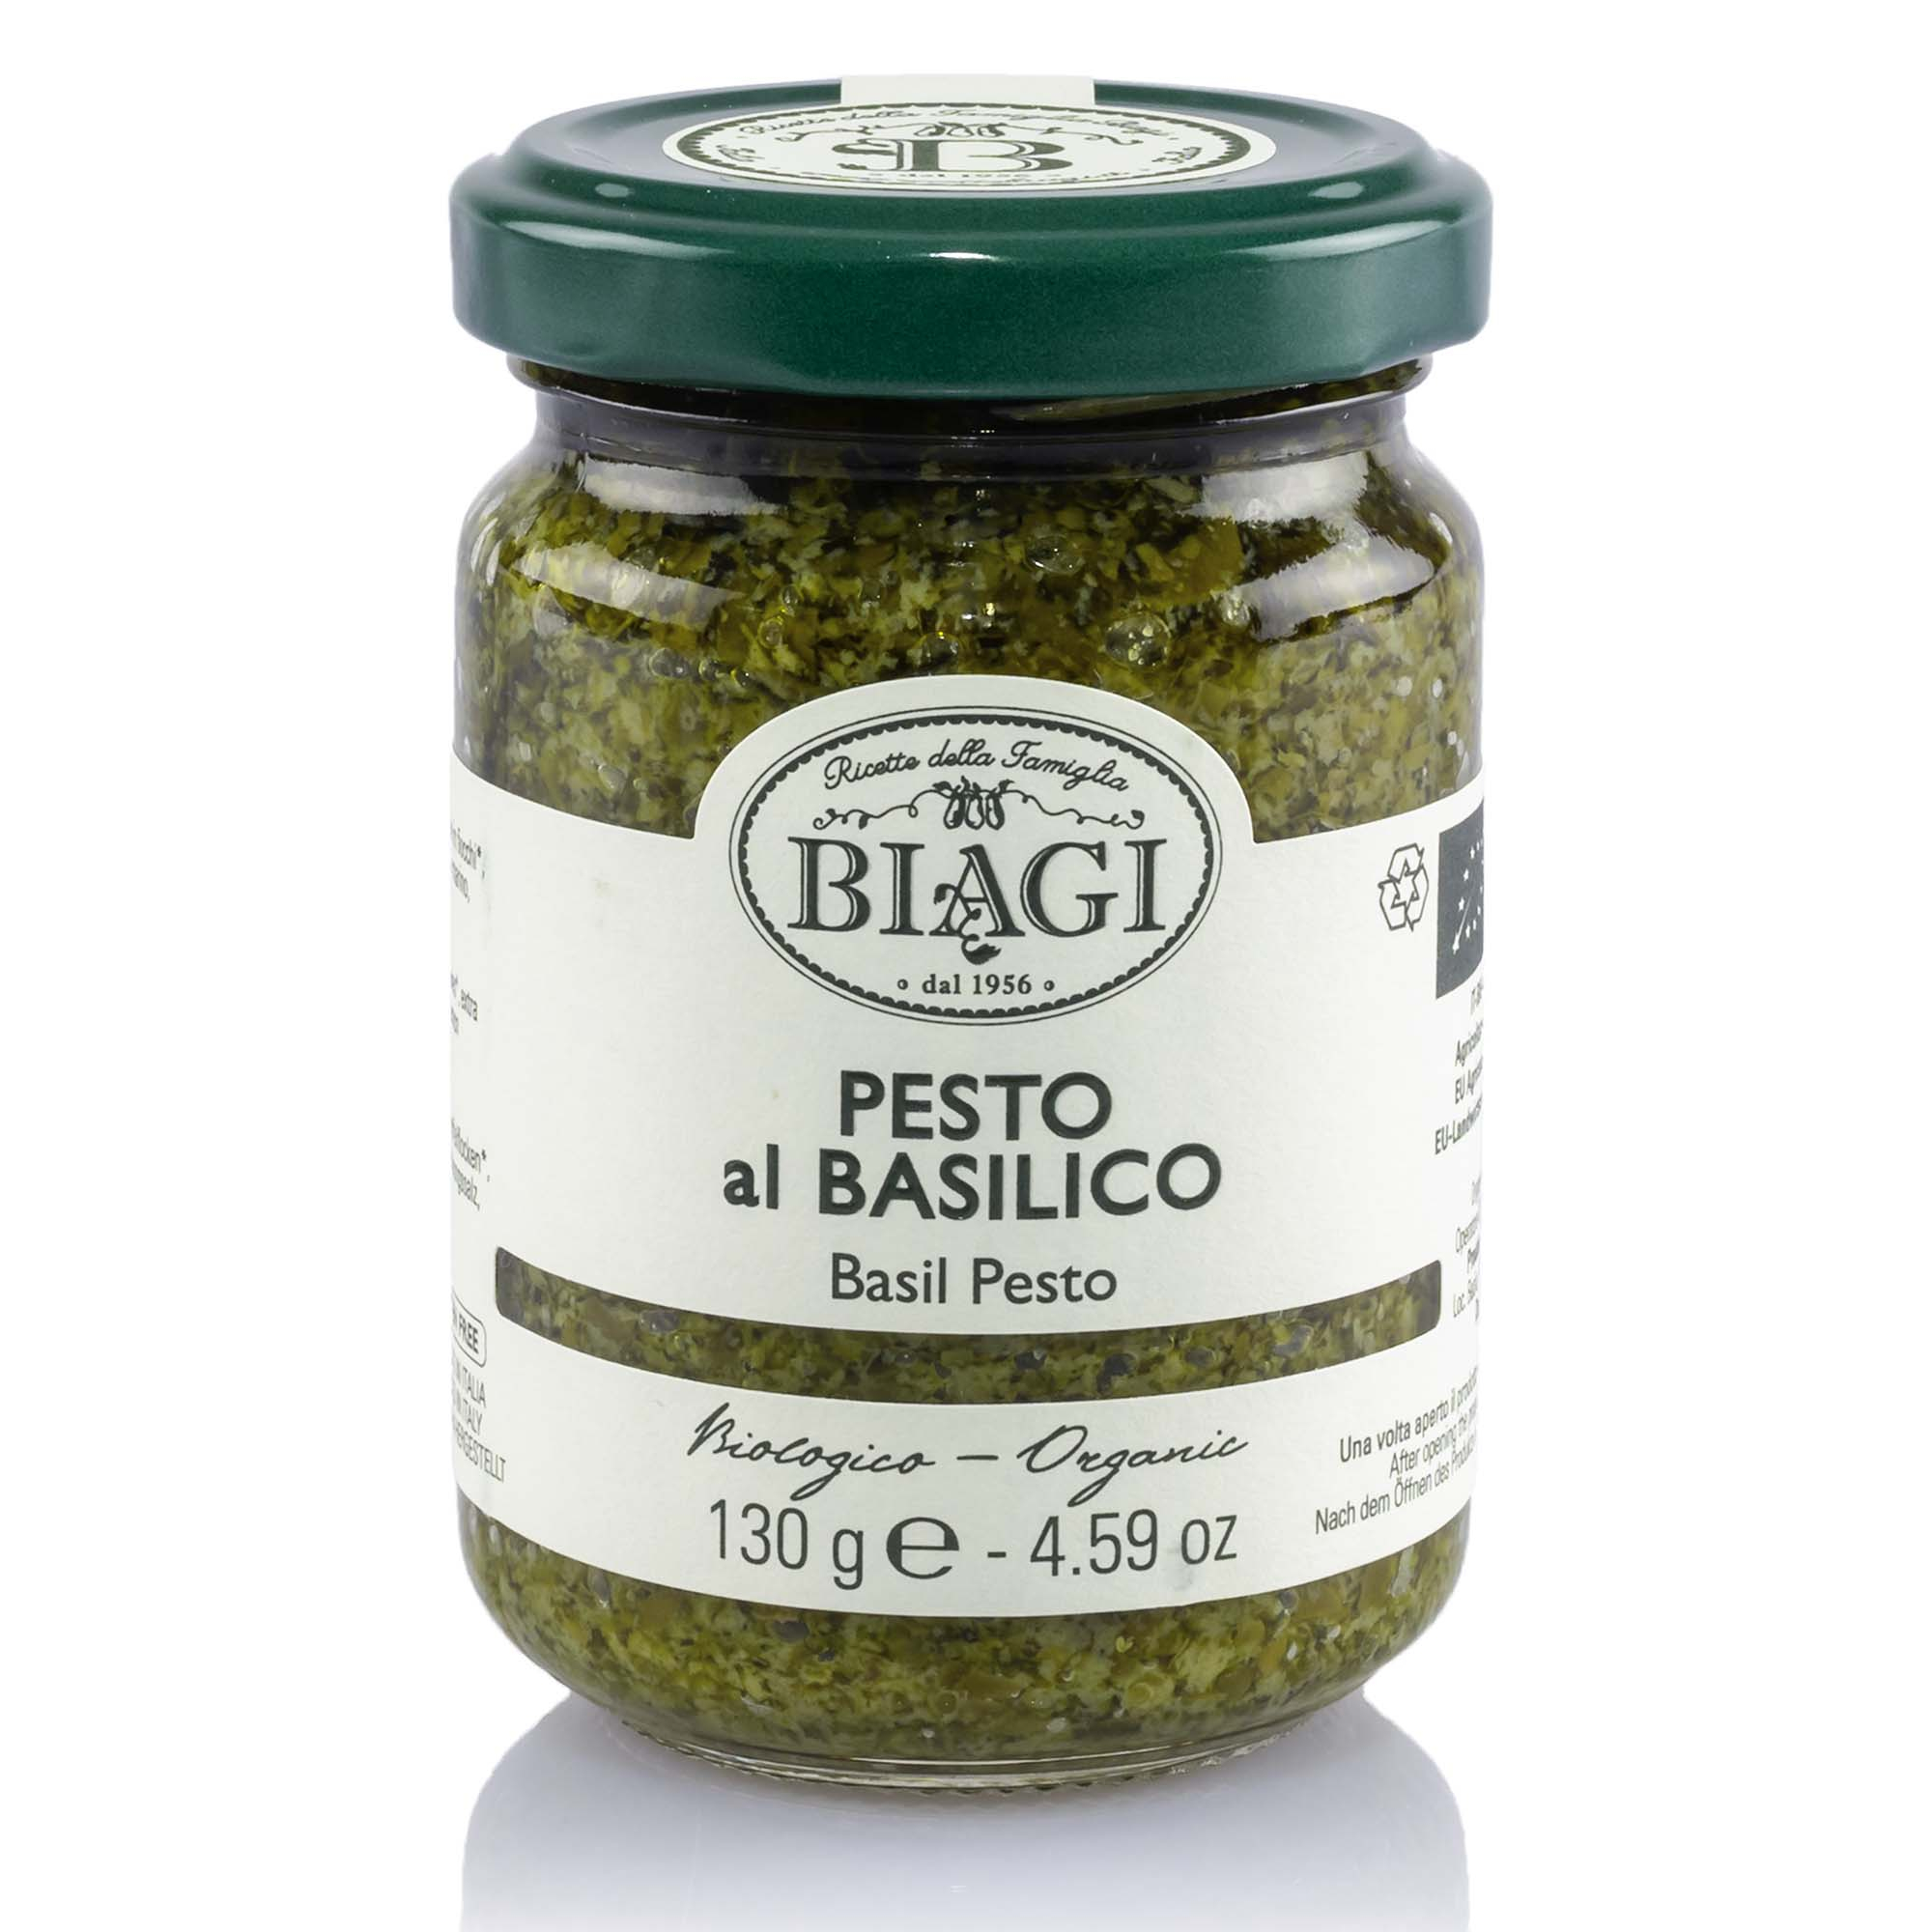 Bio Pesto al basilico, 130g